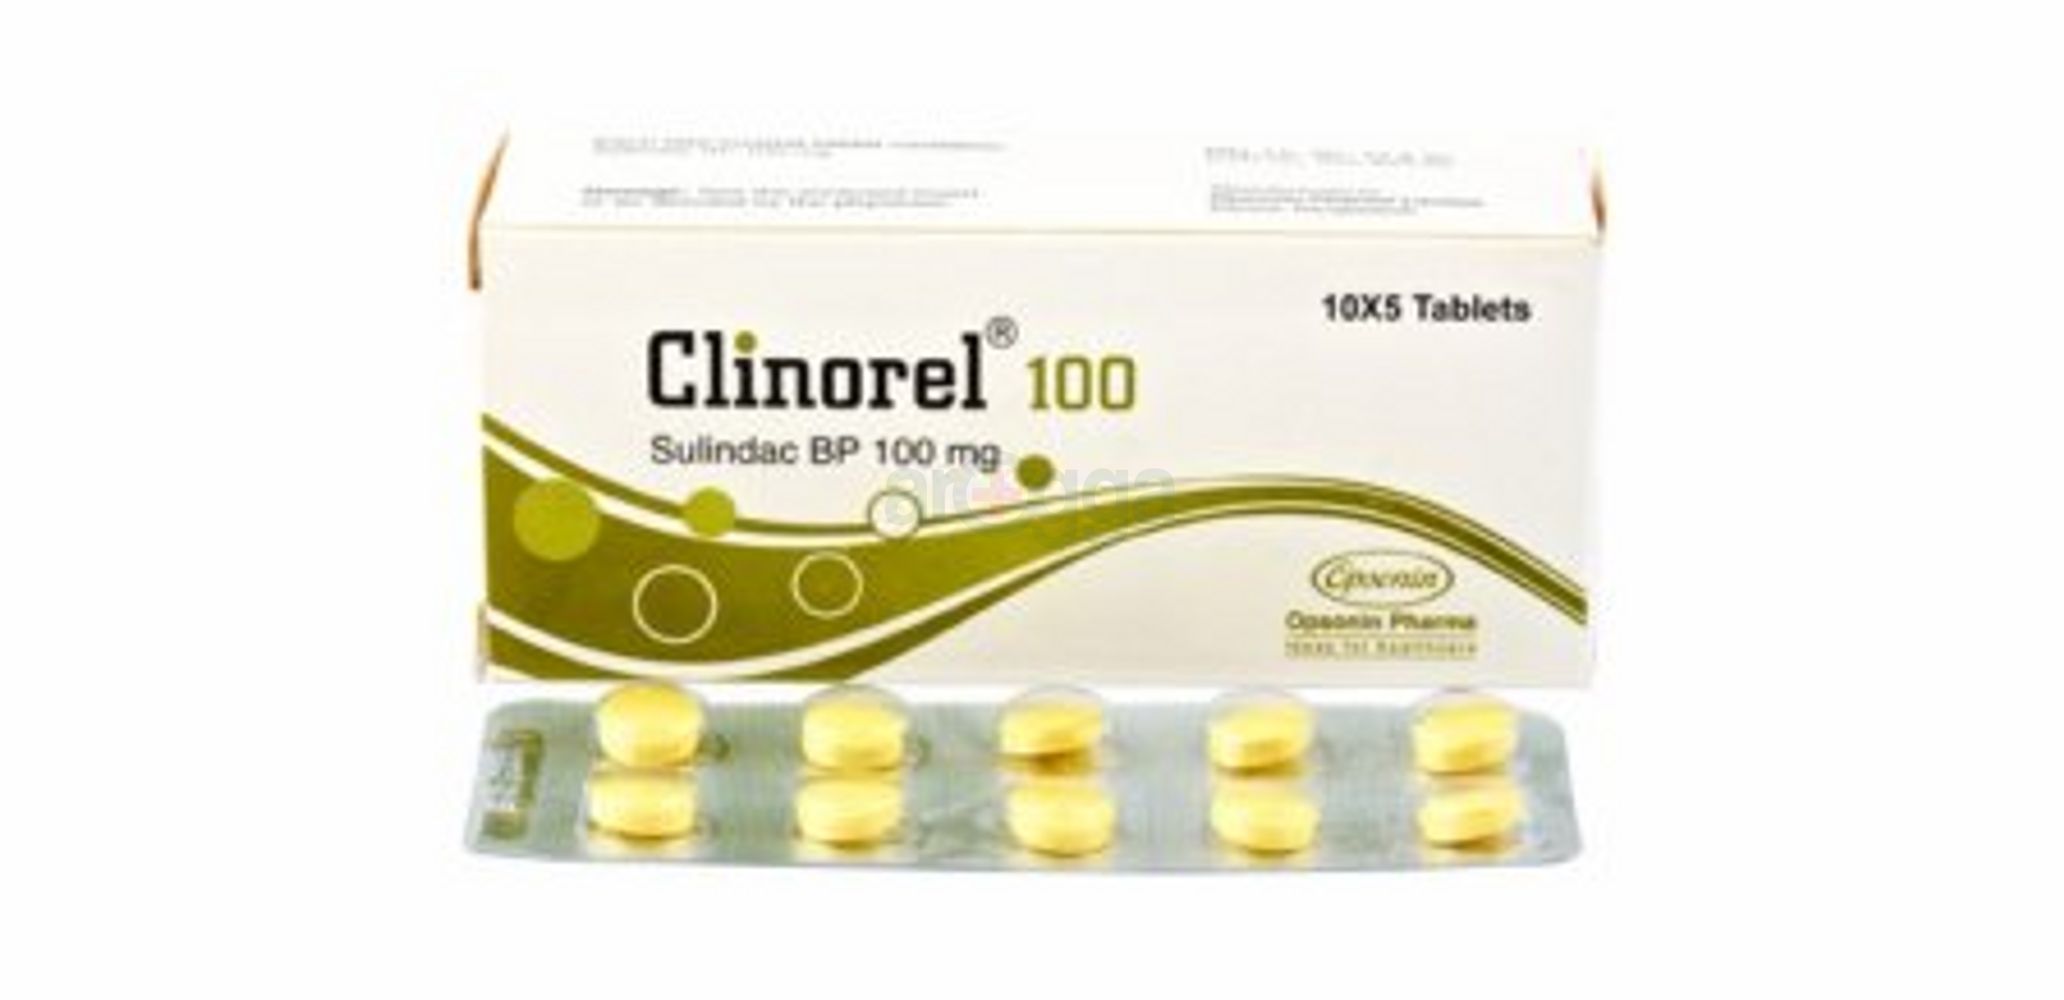 Clinorel